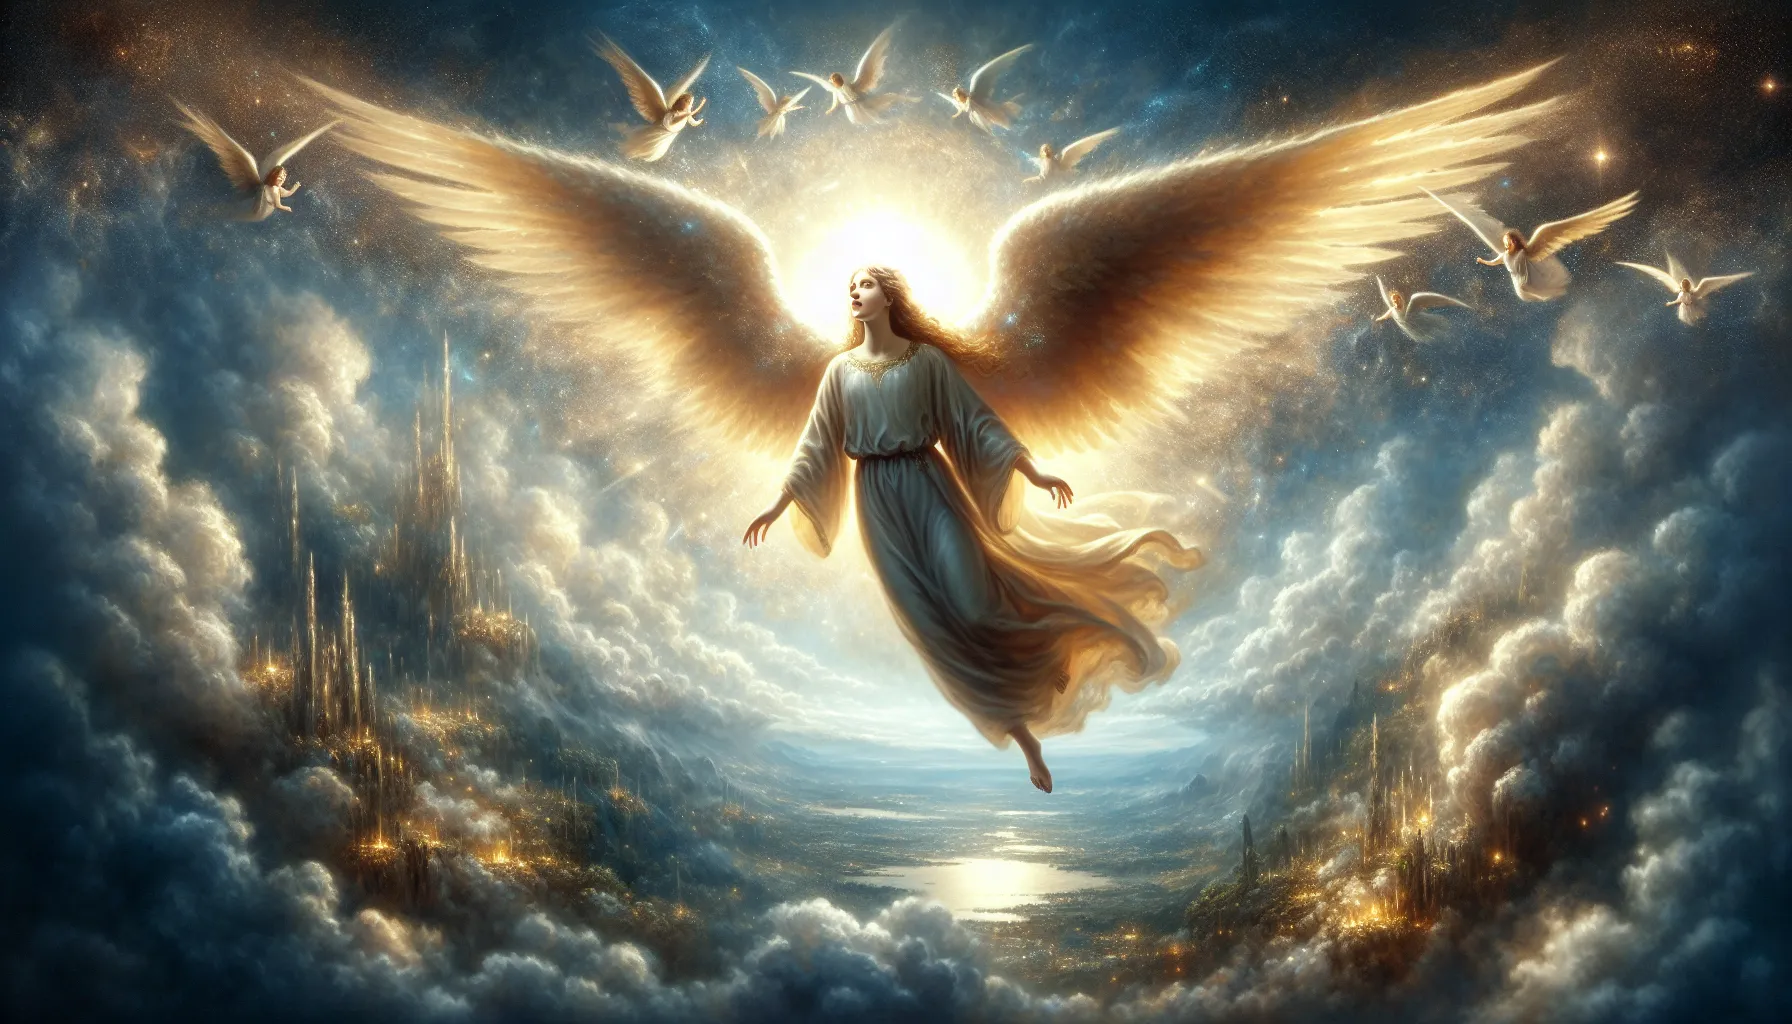 Imagen de ángeles en la Biblia representados de forma simbólica y celestial.